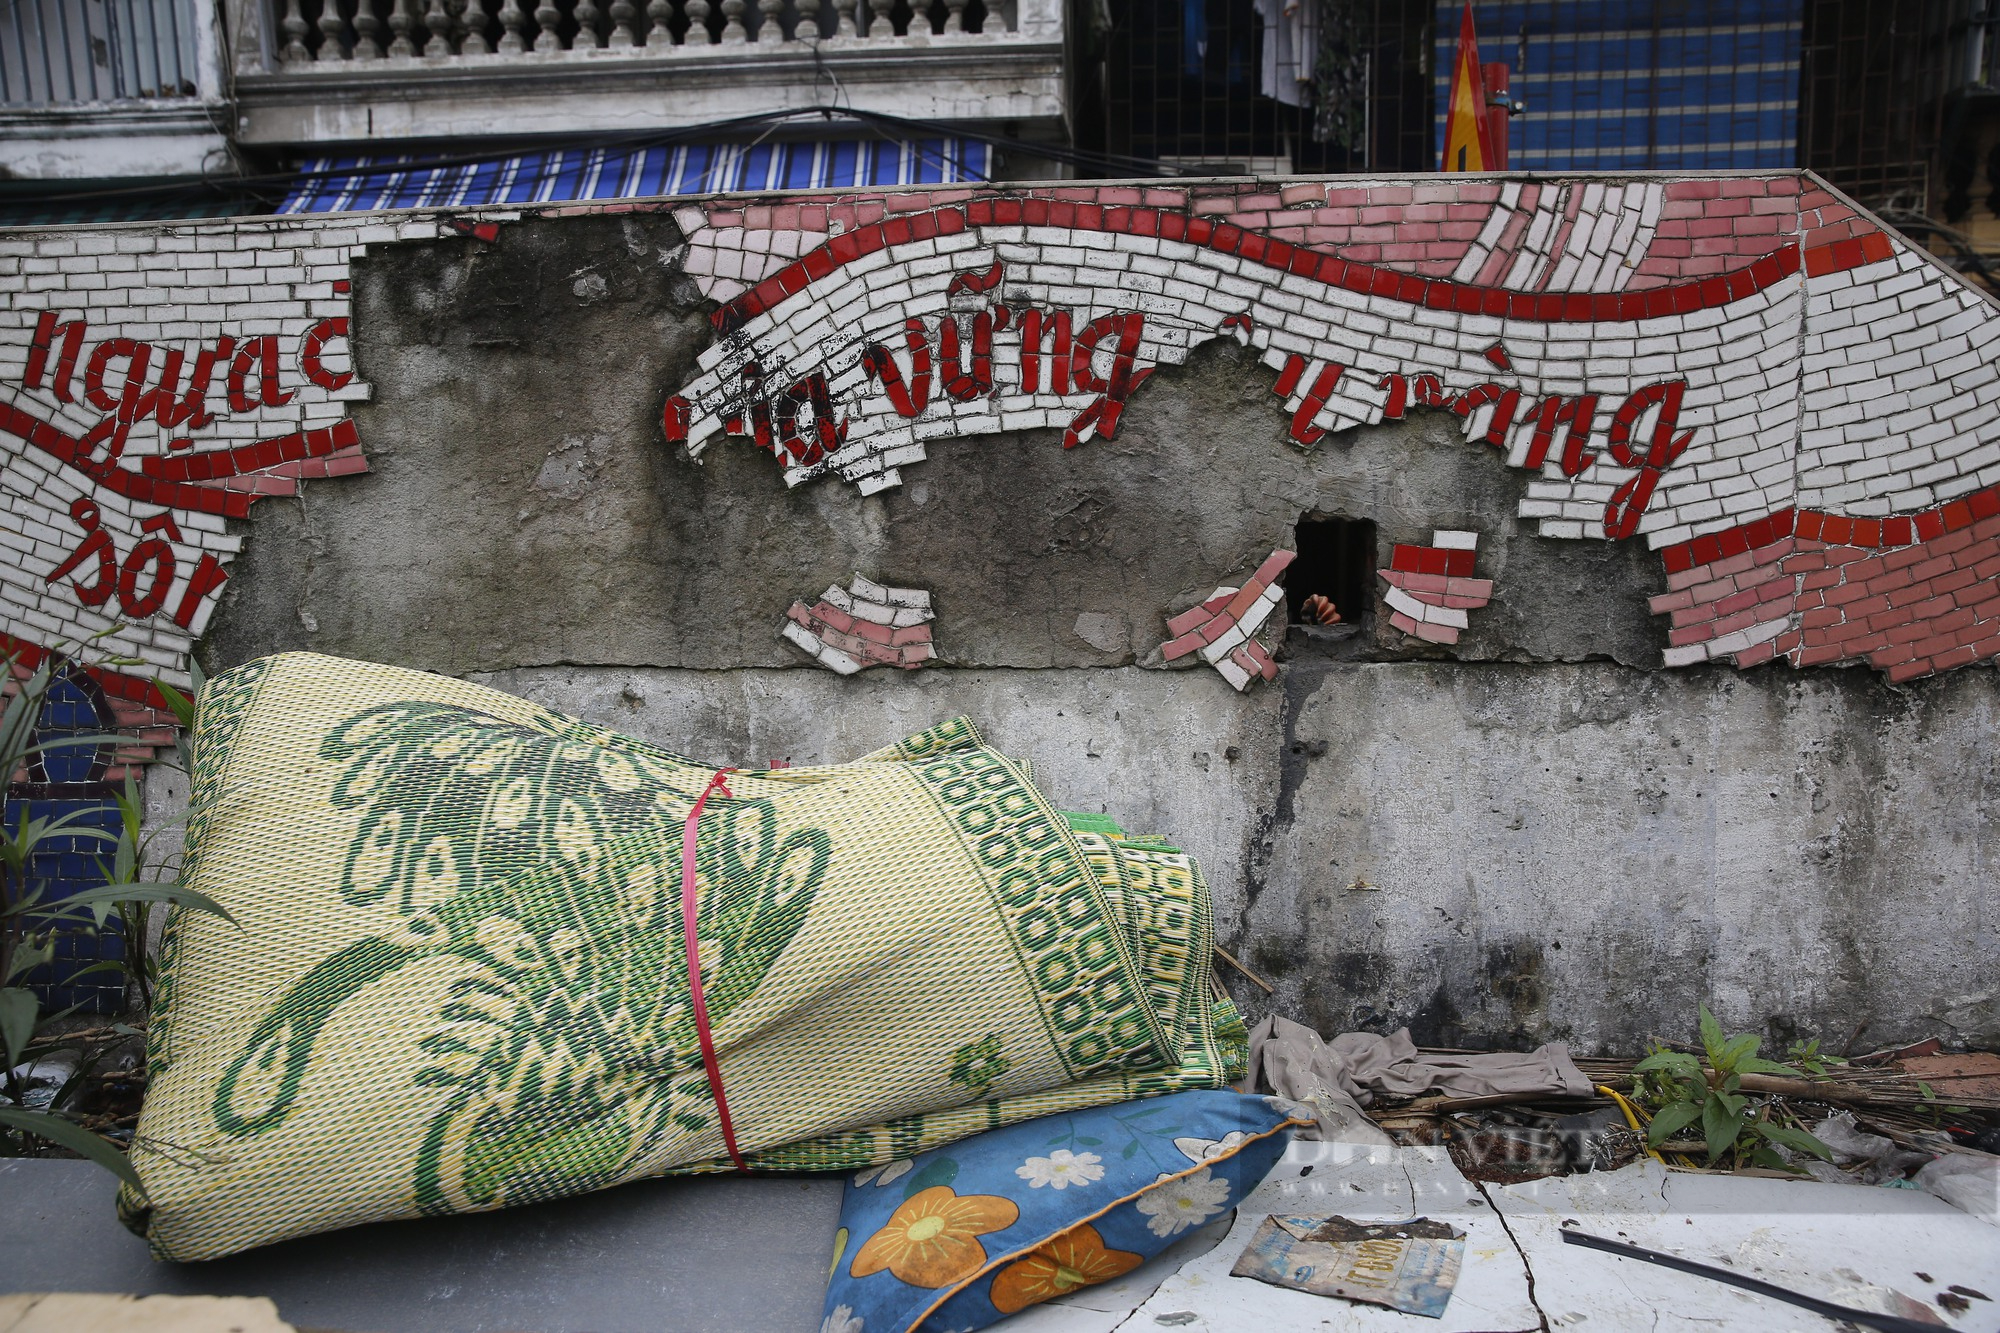 Nhiều không gian văn hóa nghệ thuật tại Hà Nội bị bôi bẩn, xuống cấp nghiêm trọng - Ảnh 11.